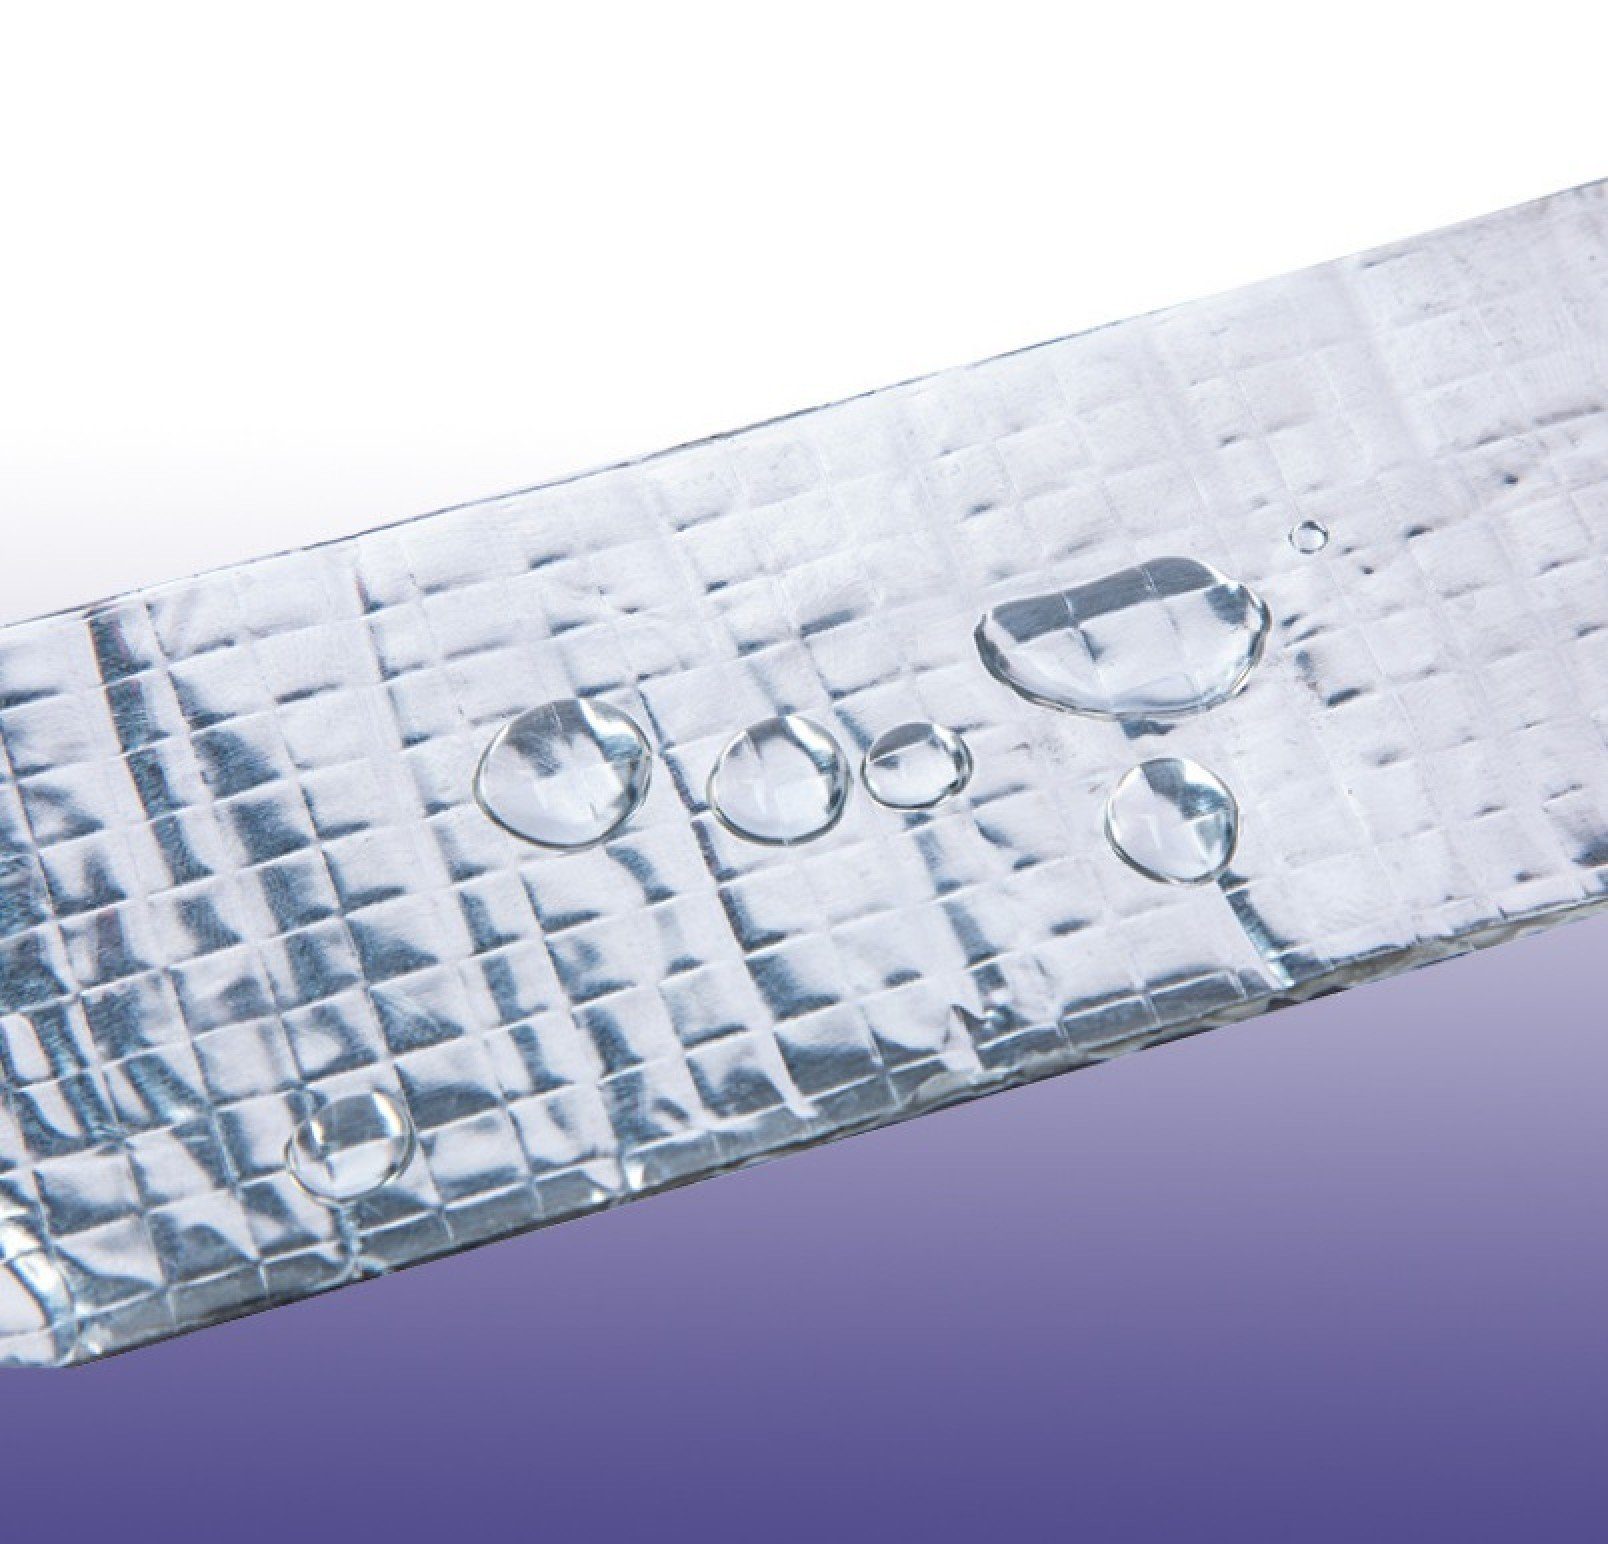 50mm] Isolierband Rollen - Klebeband BAYLI x 2 Reparatur Multitool [5m Wasserdicht